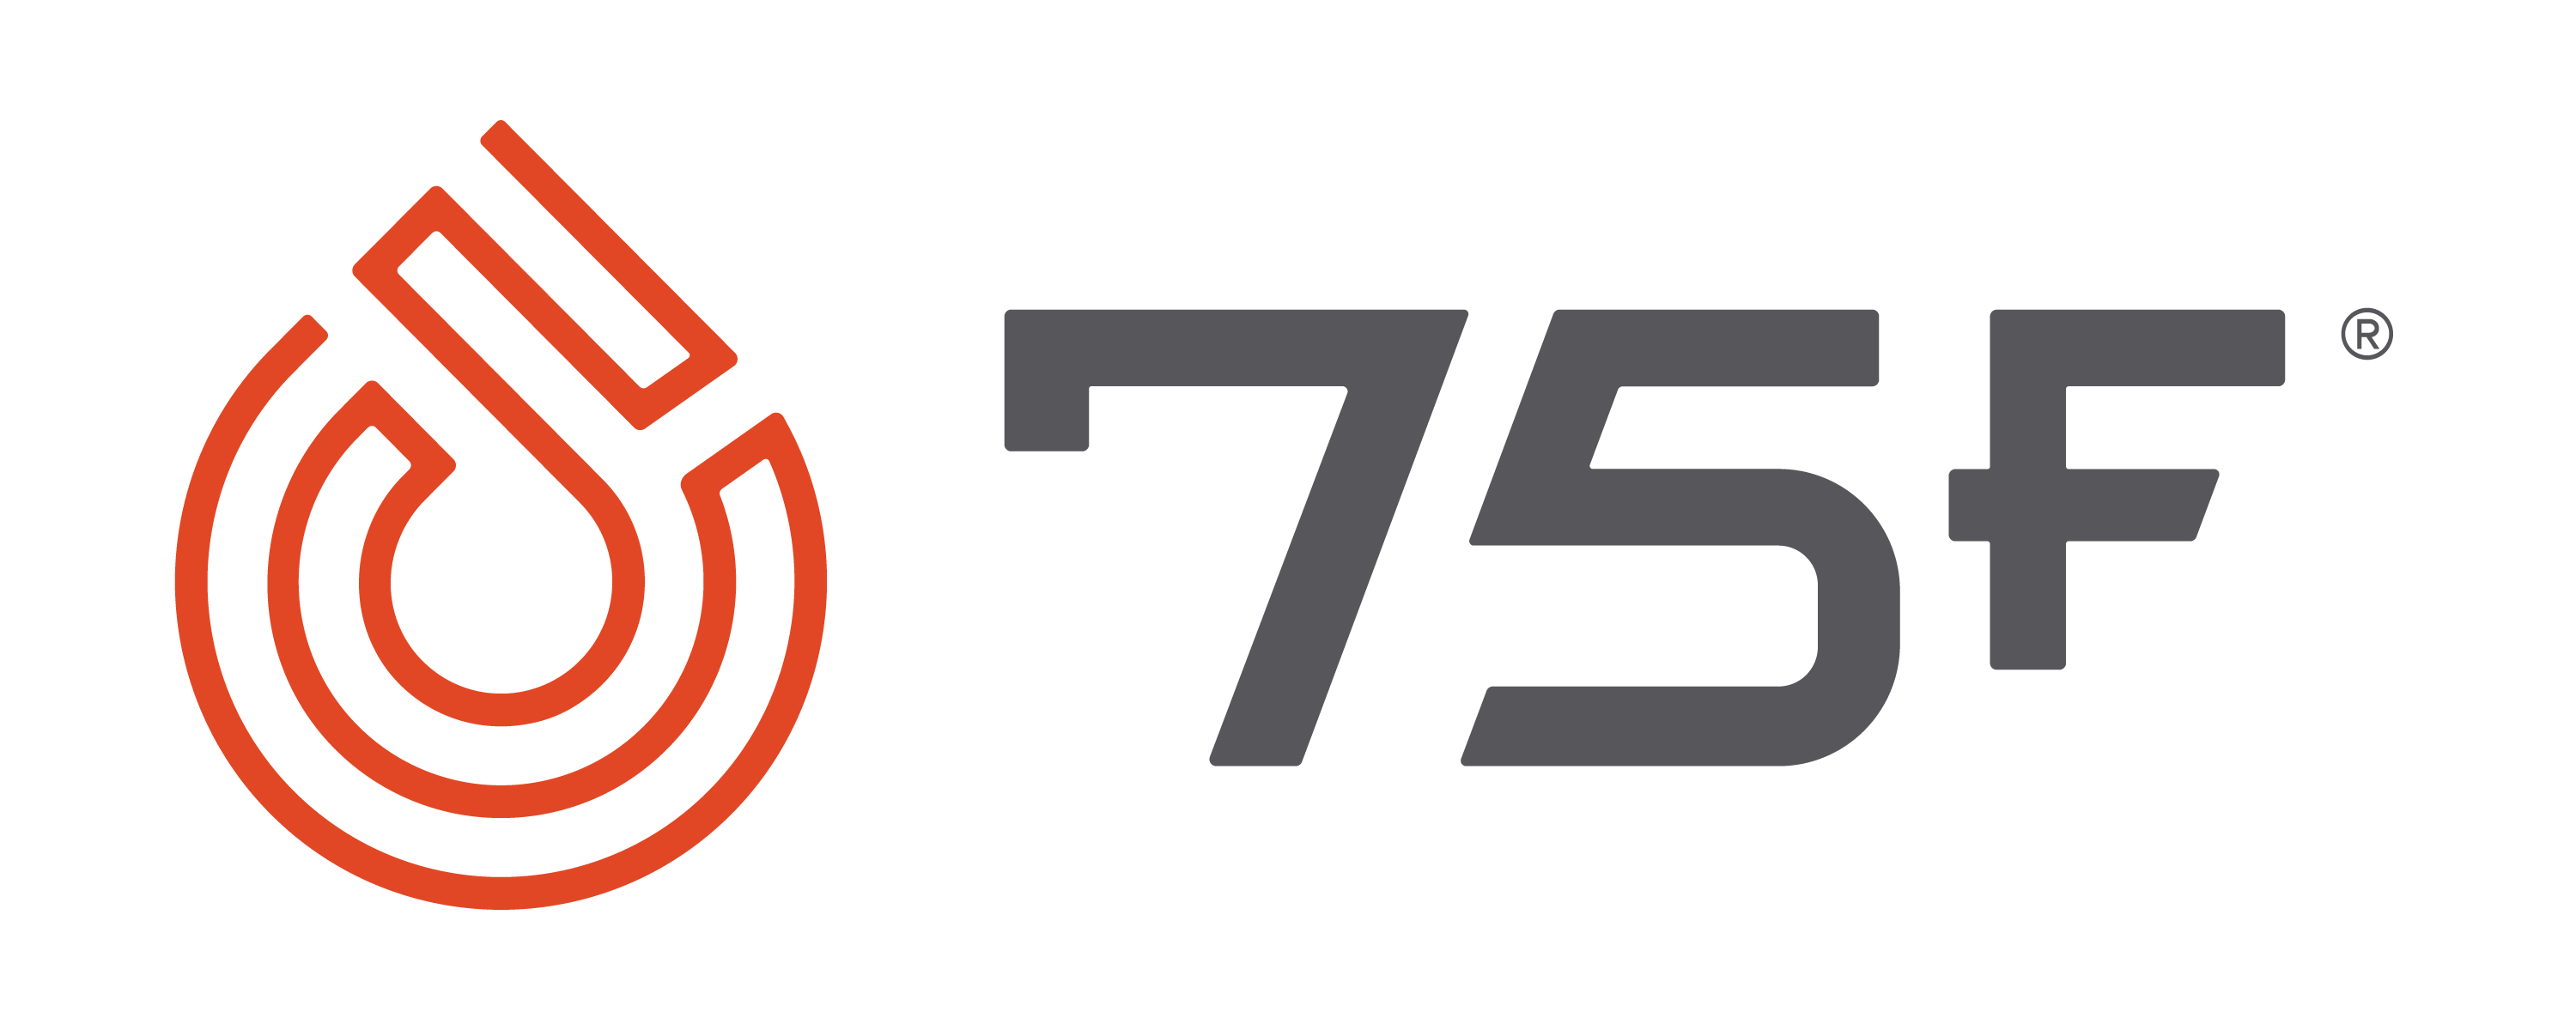 75F Logo Color Transparent